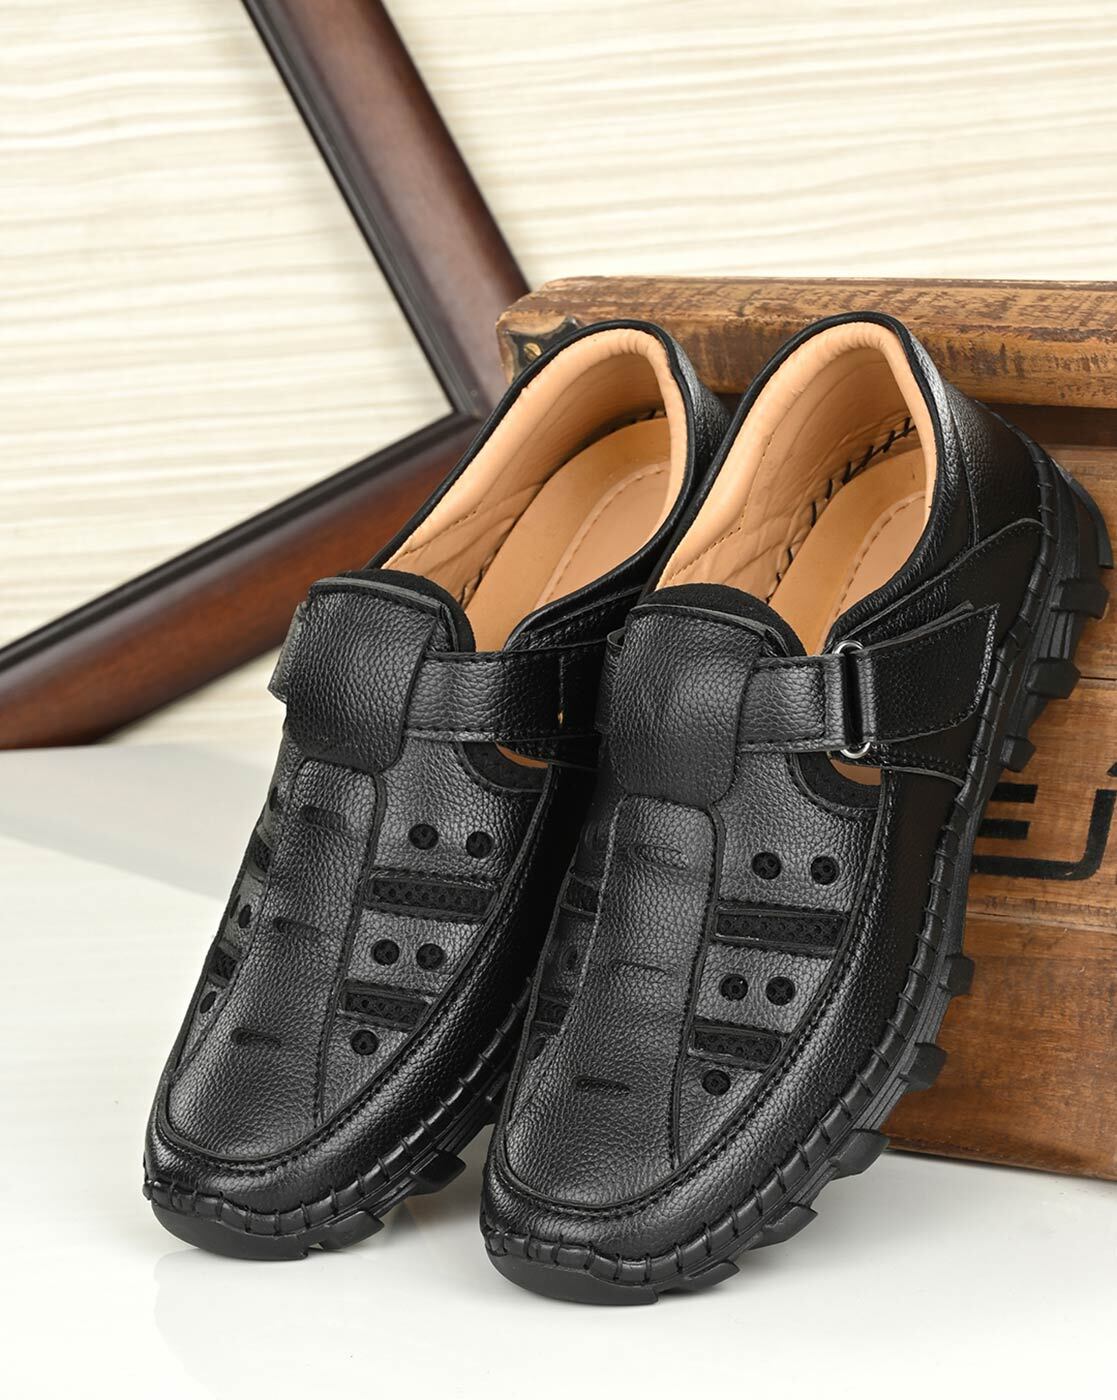 Buy Black Sandals for Men by Mactree Online | Ajio.com